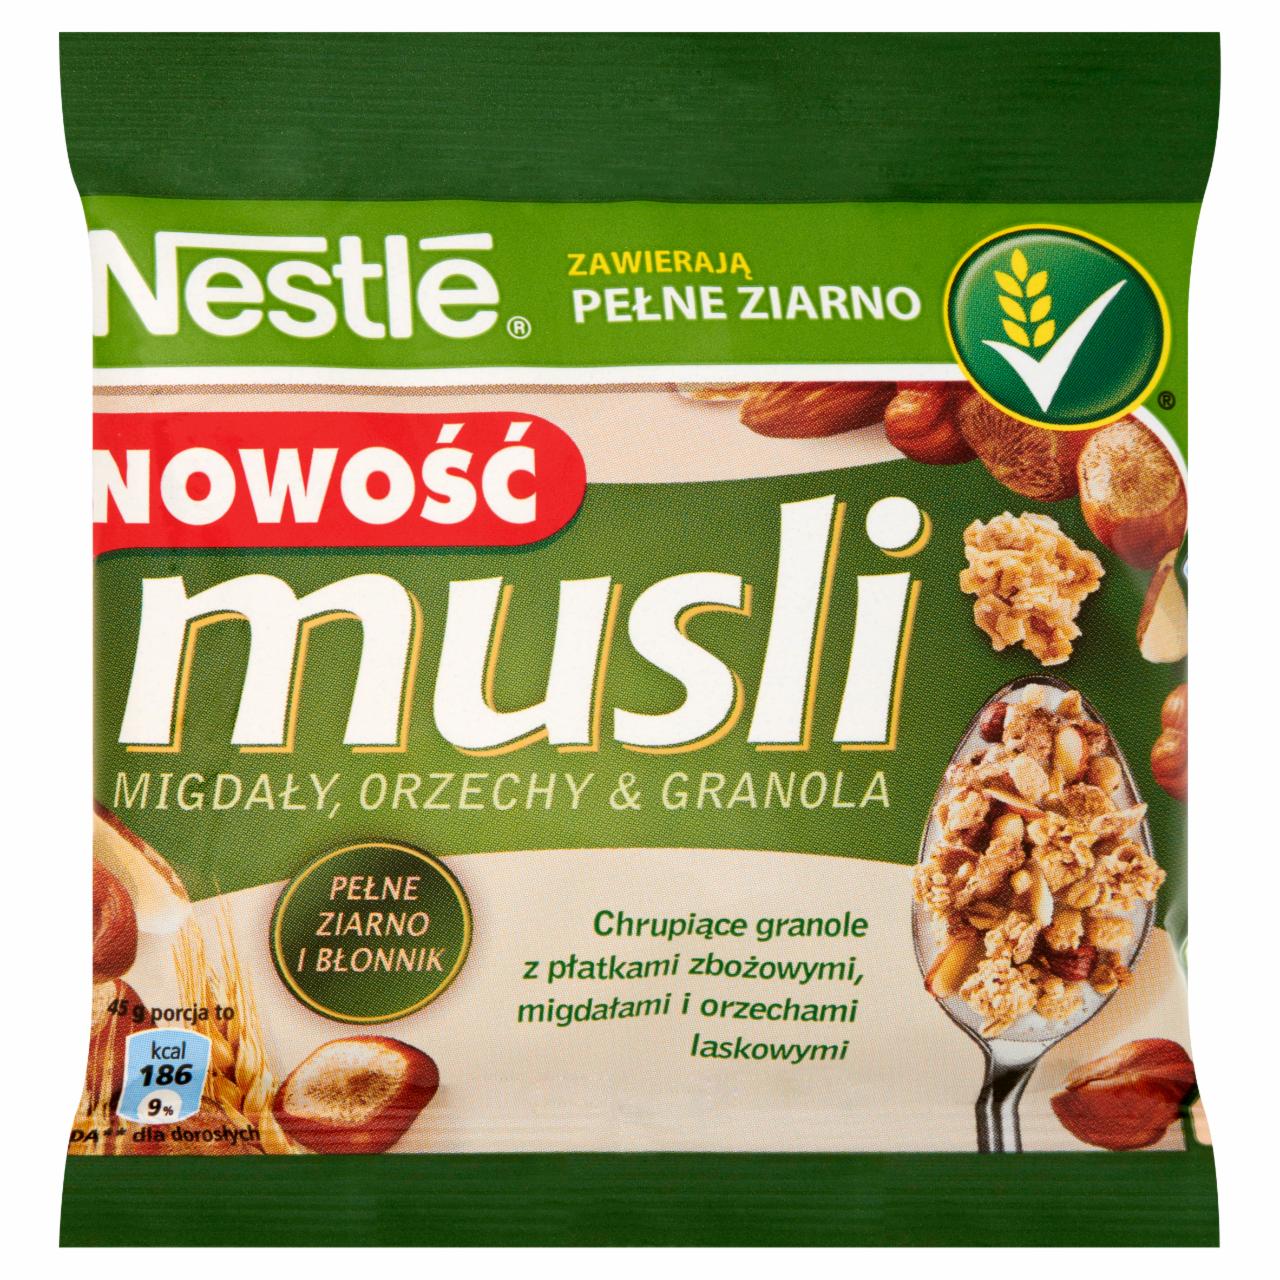 Zdjęcia - Nestlé Musli Migdały orzechy i granola 45 g